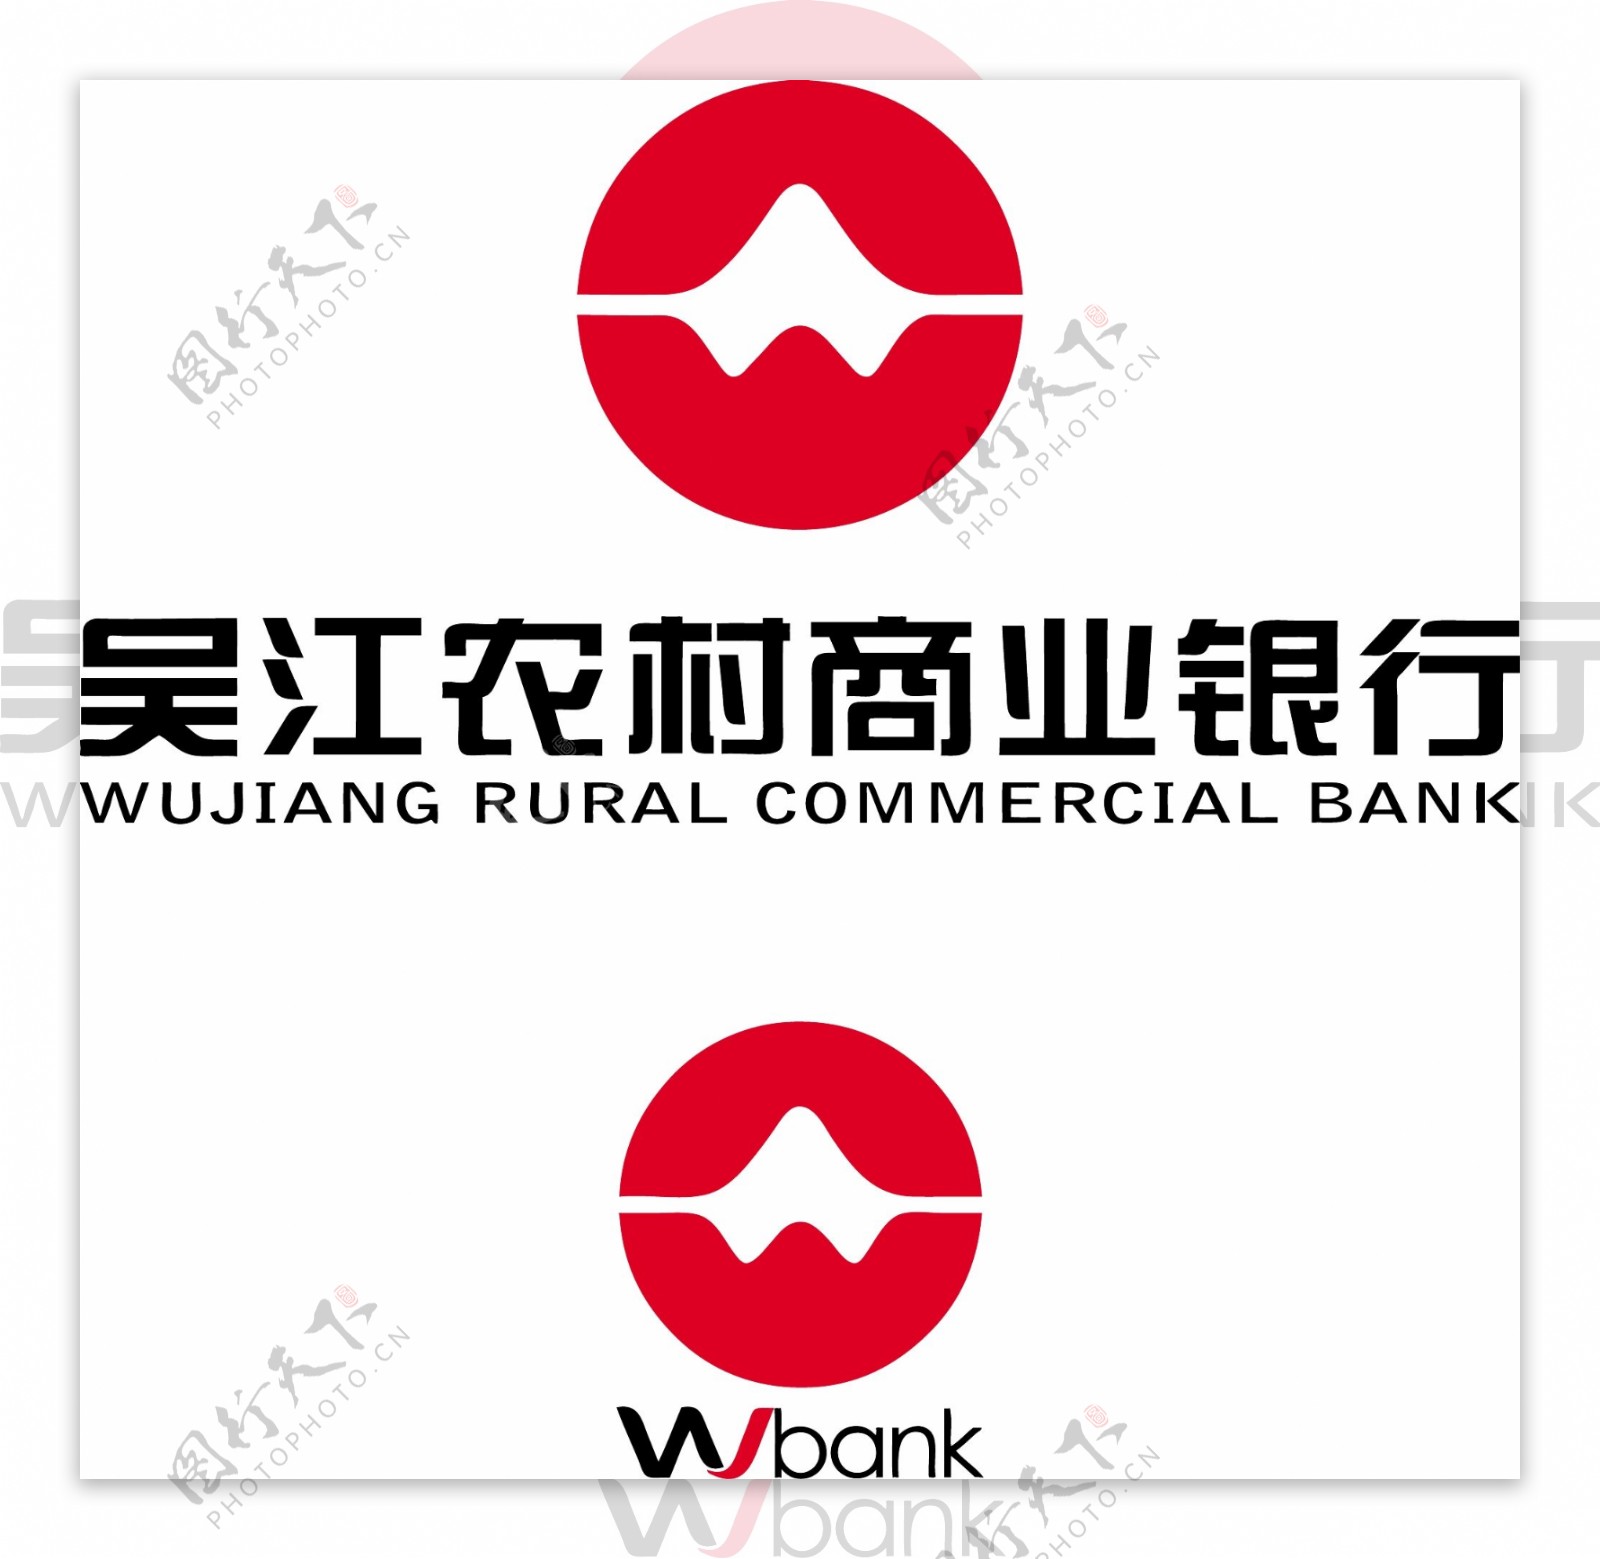 吴江农村商业银行